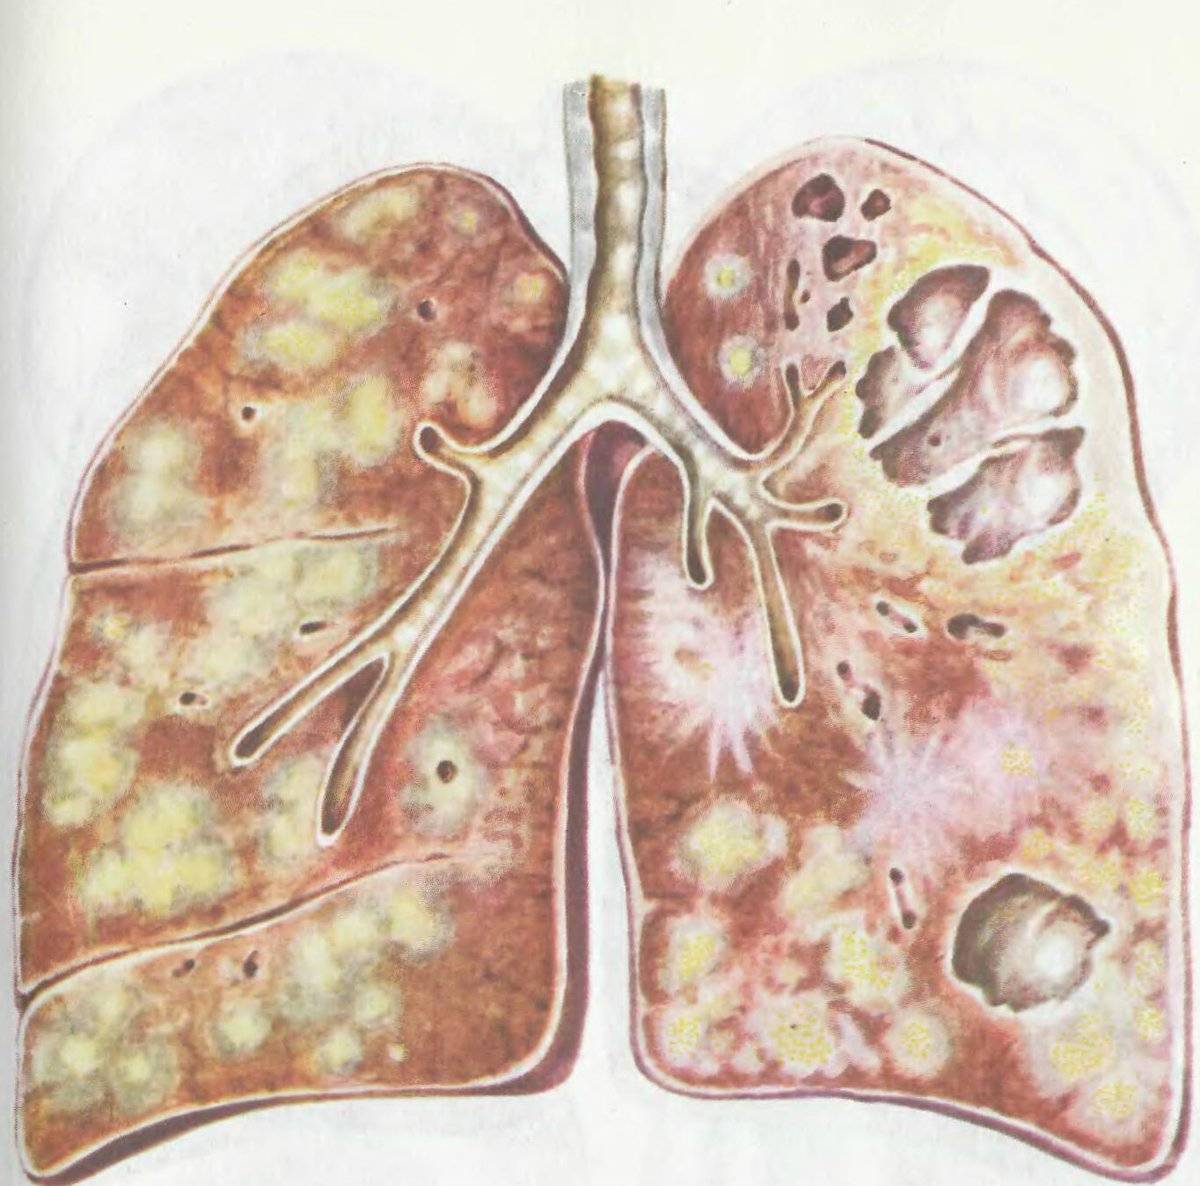 О первых признаках туберкулеза и симптомах у взрослых на начальных стадиях болезни — стоптубик